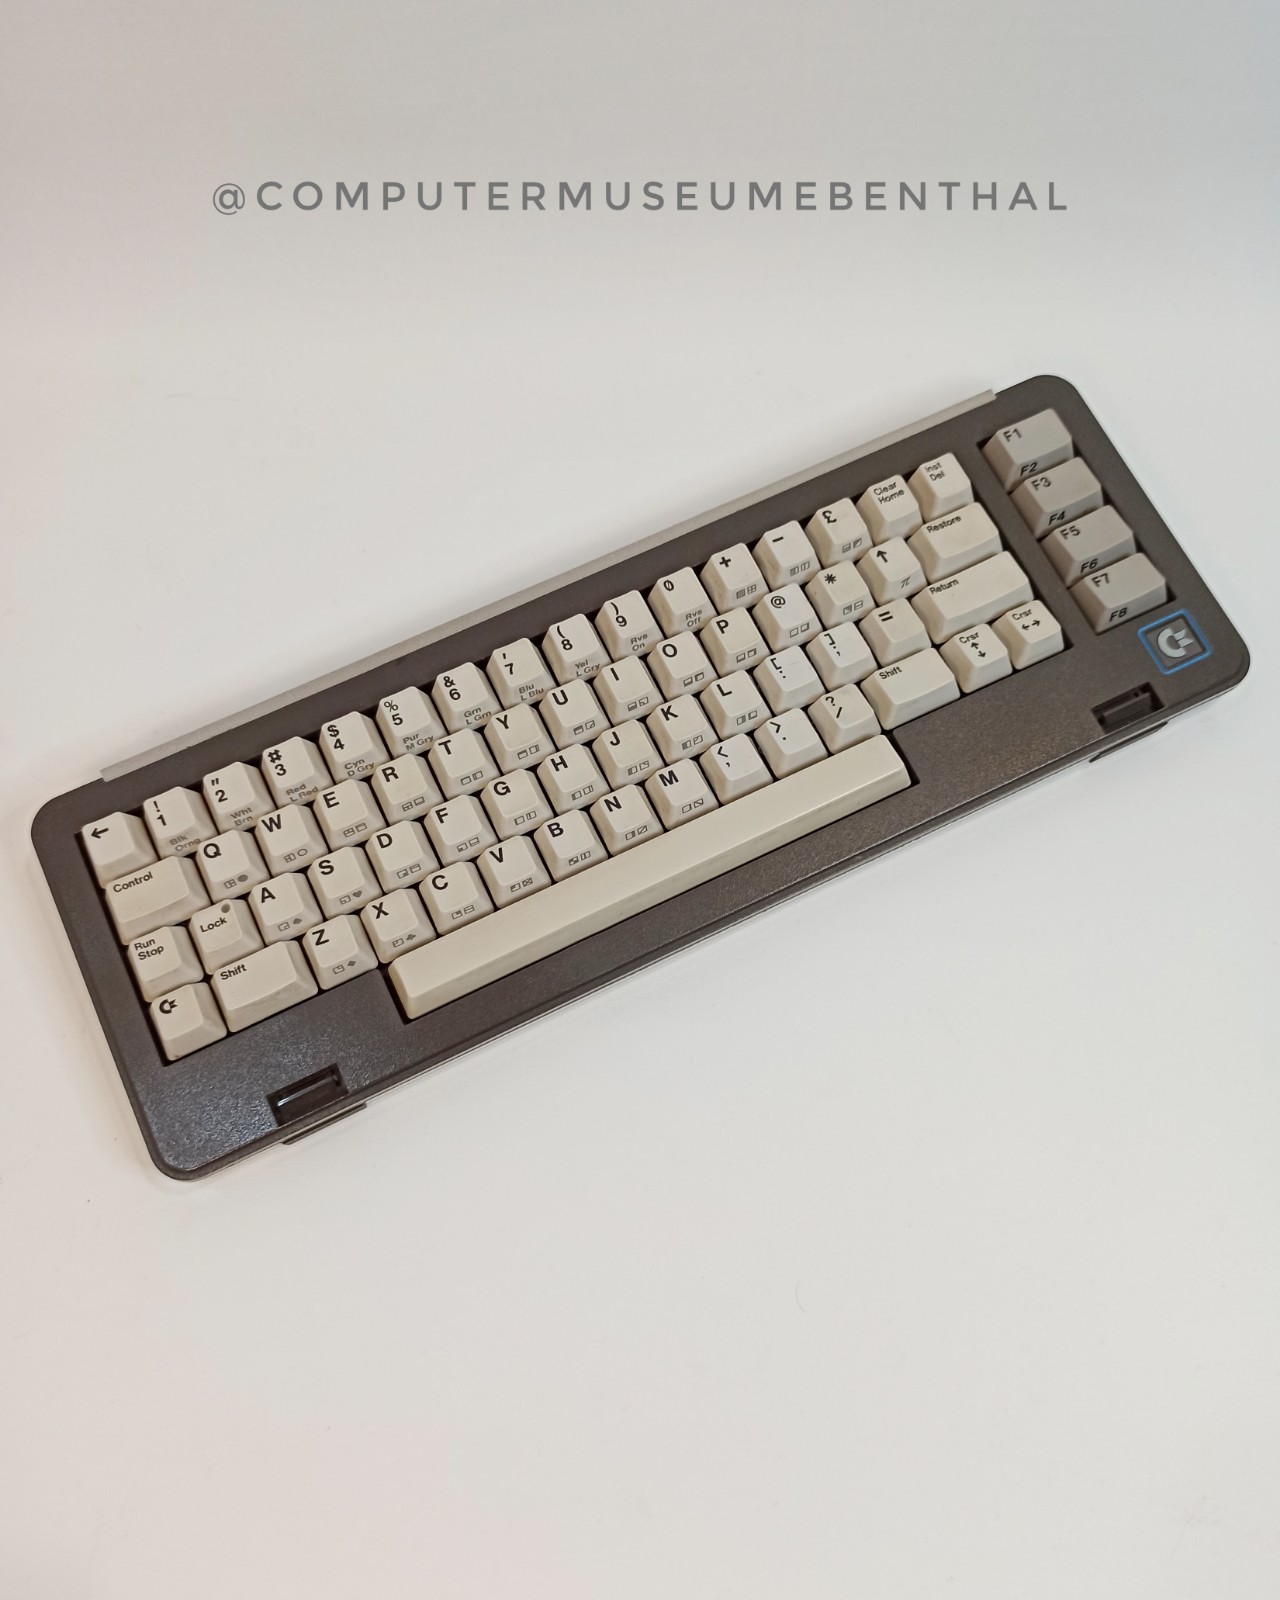 Commodore SX64